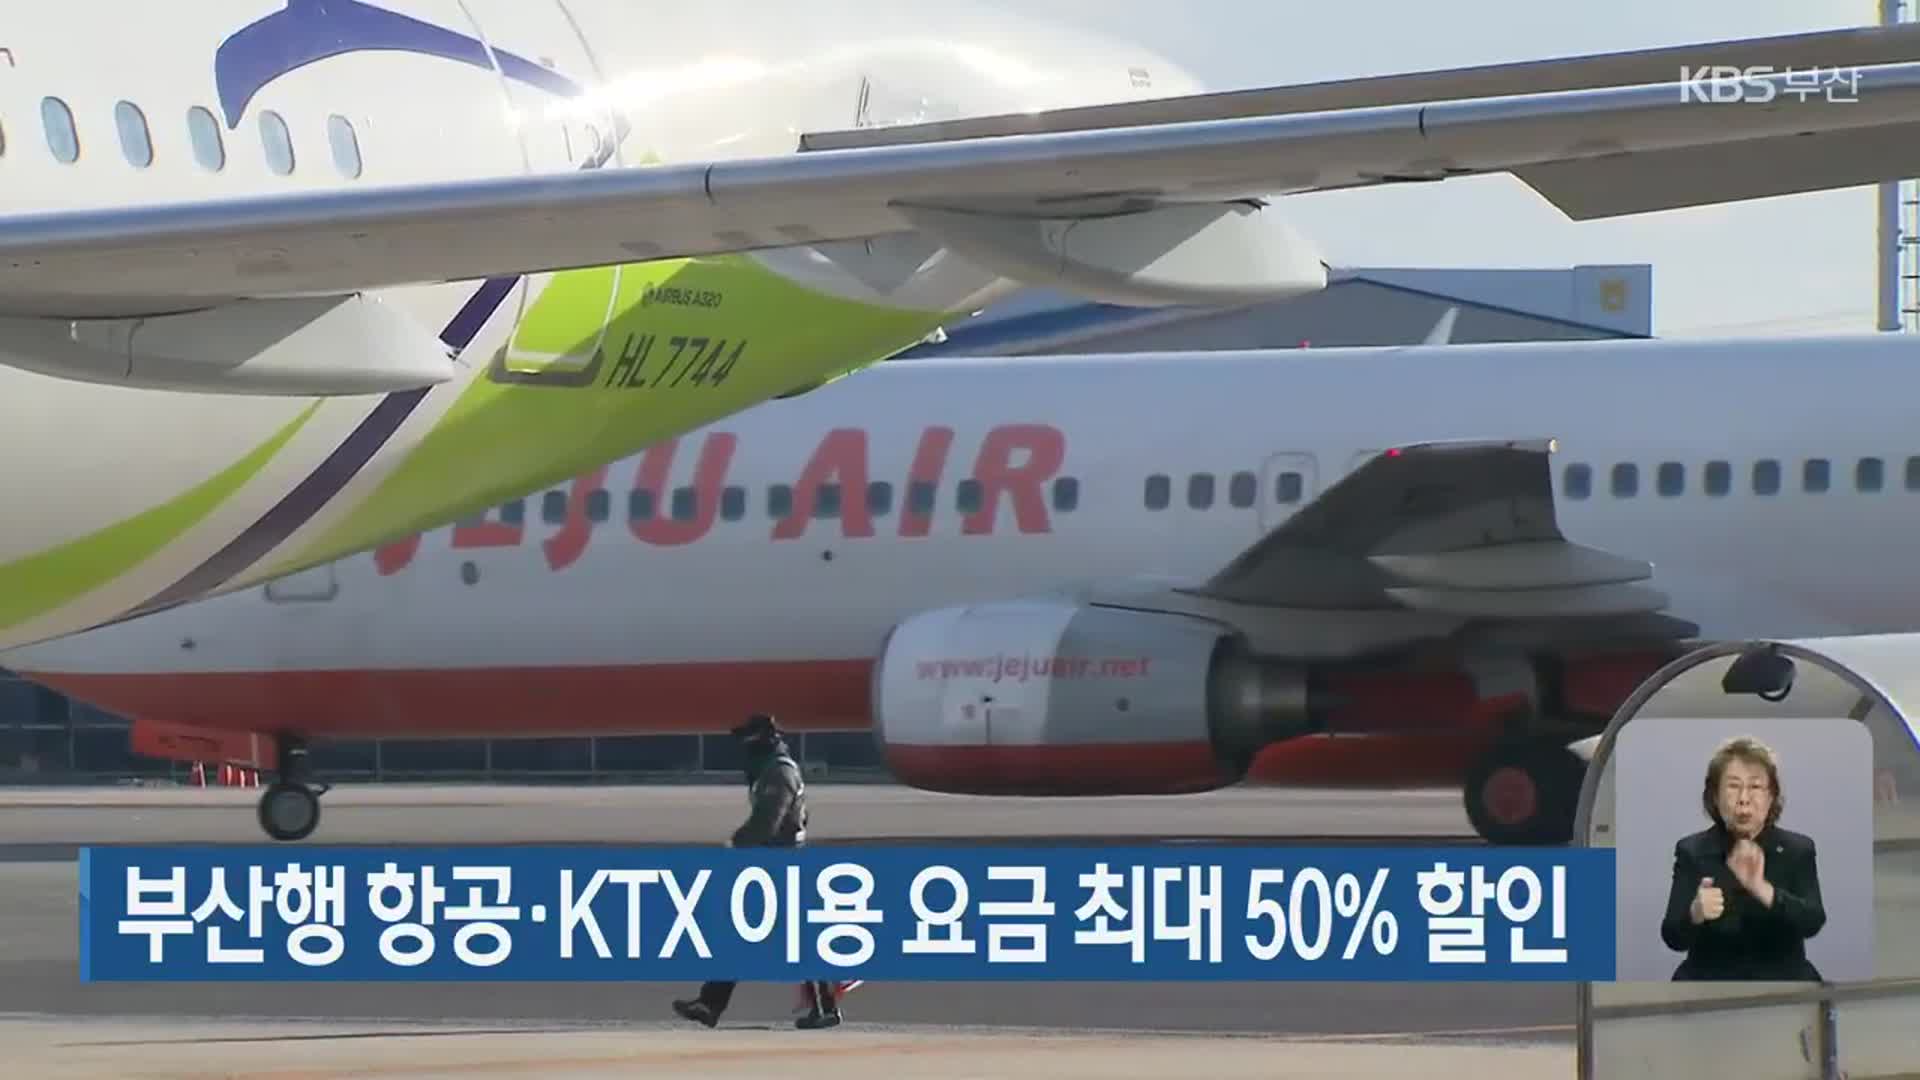 부산행 항공·KTX 이용 요금 최대 50% 할인